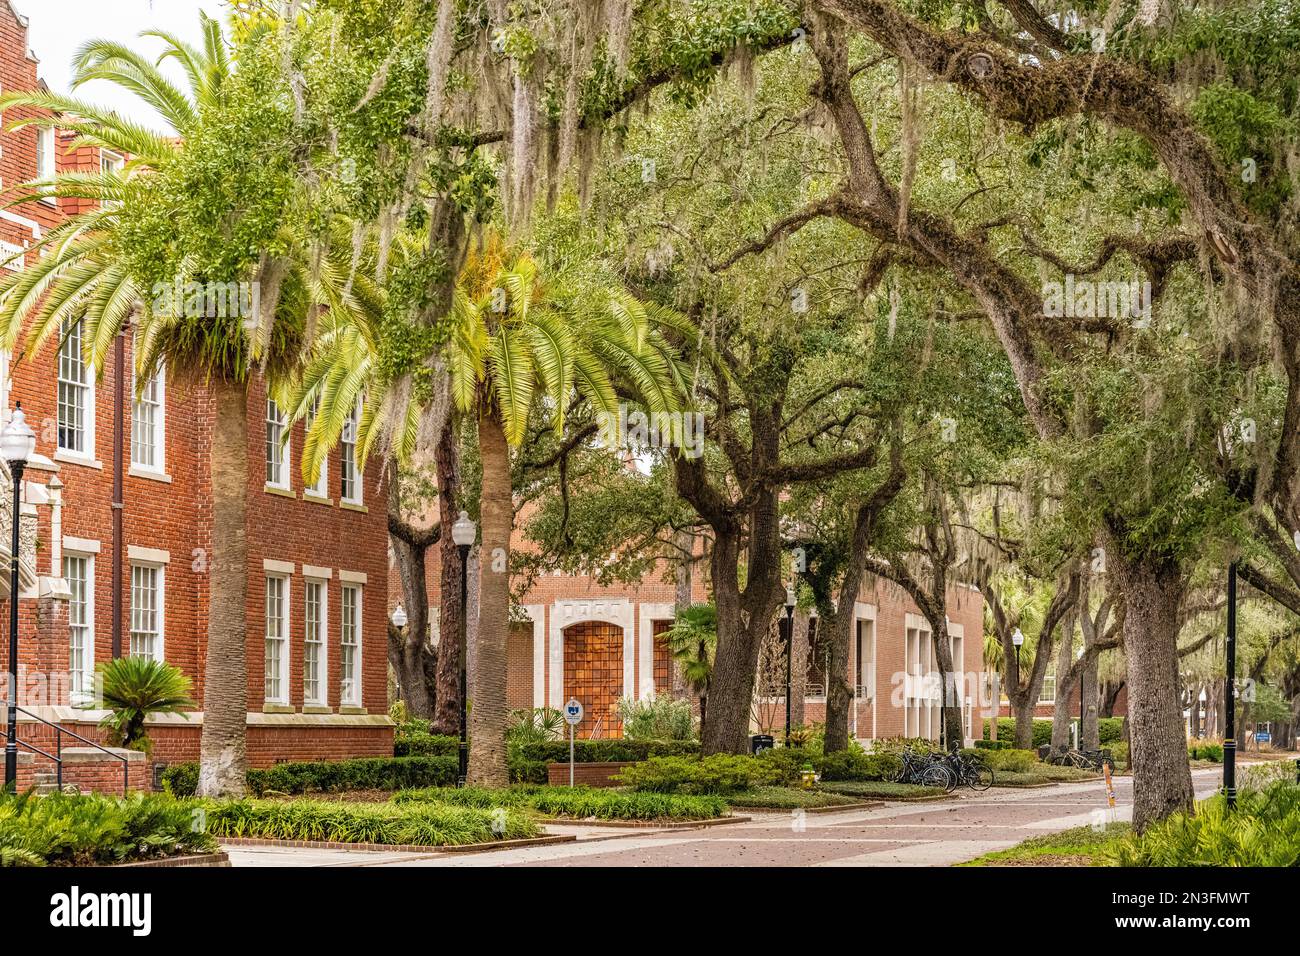 Palmiers, chênes et mousses espagnoles sur le campus de l'Université de Floride à Gainesville, Floride. (ÉTATS-UNIS) Banque D'Images